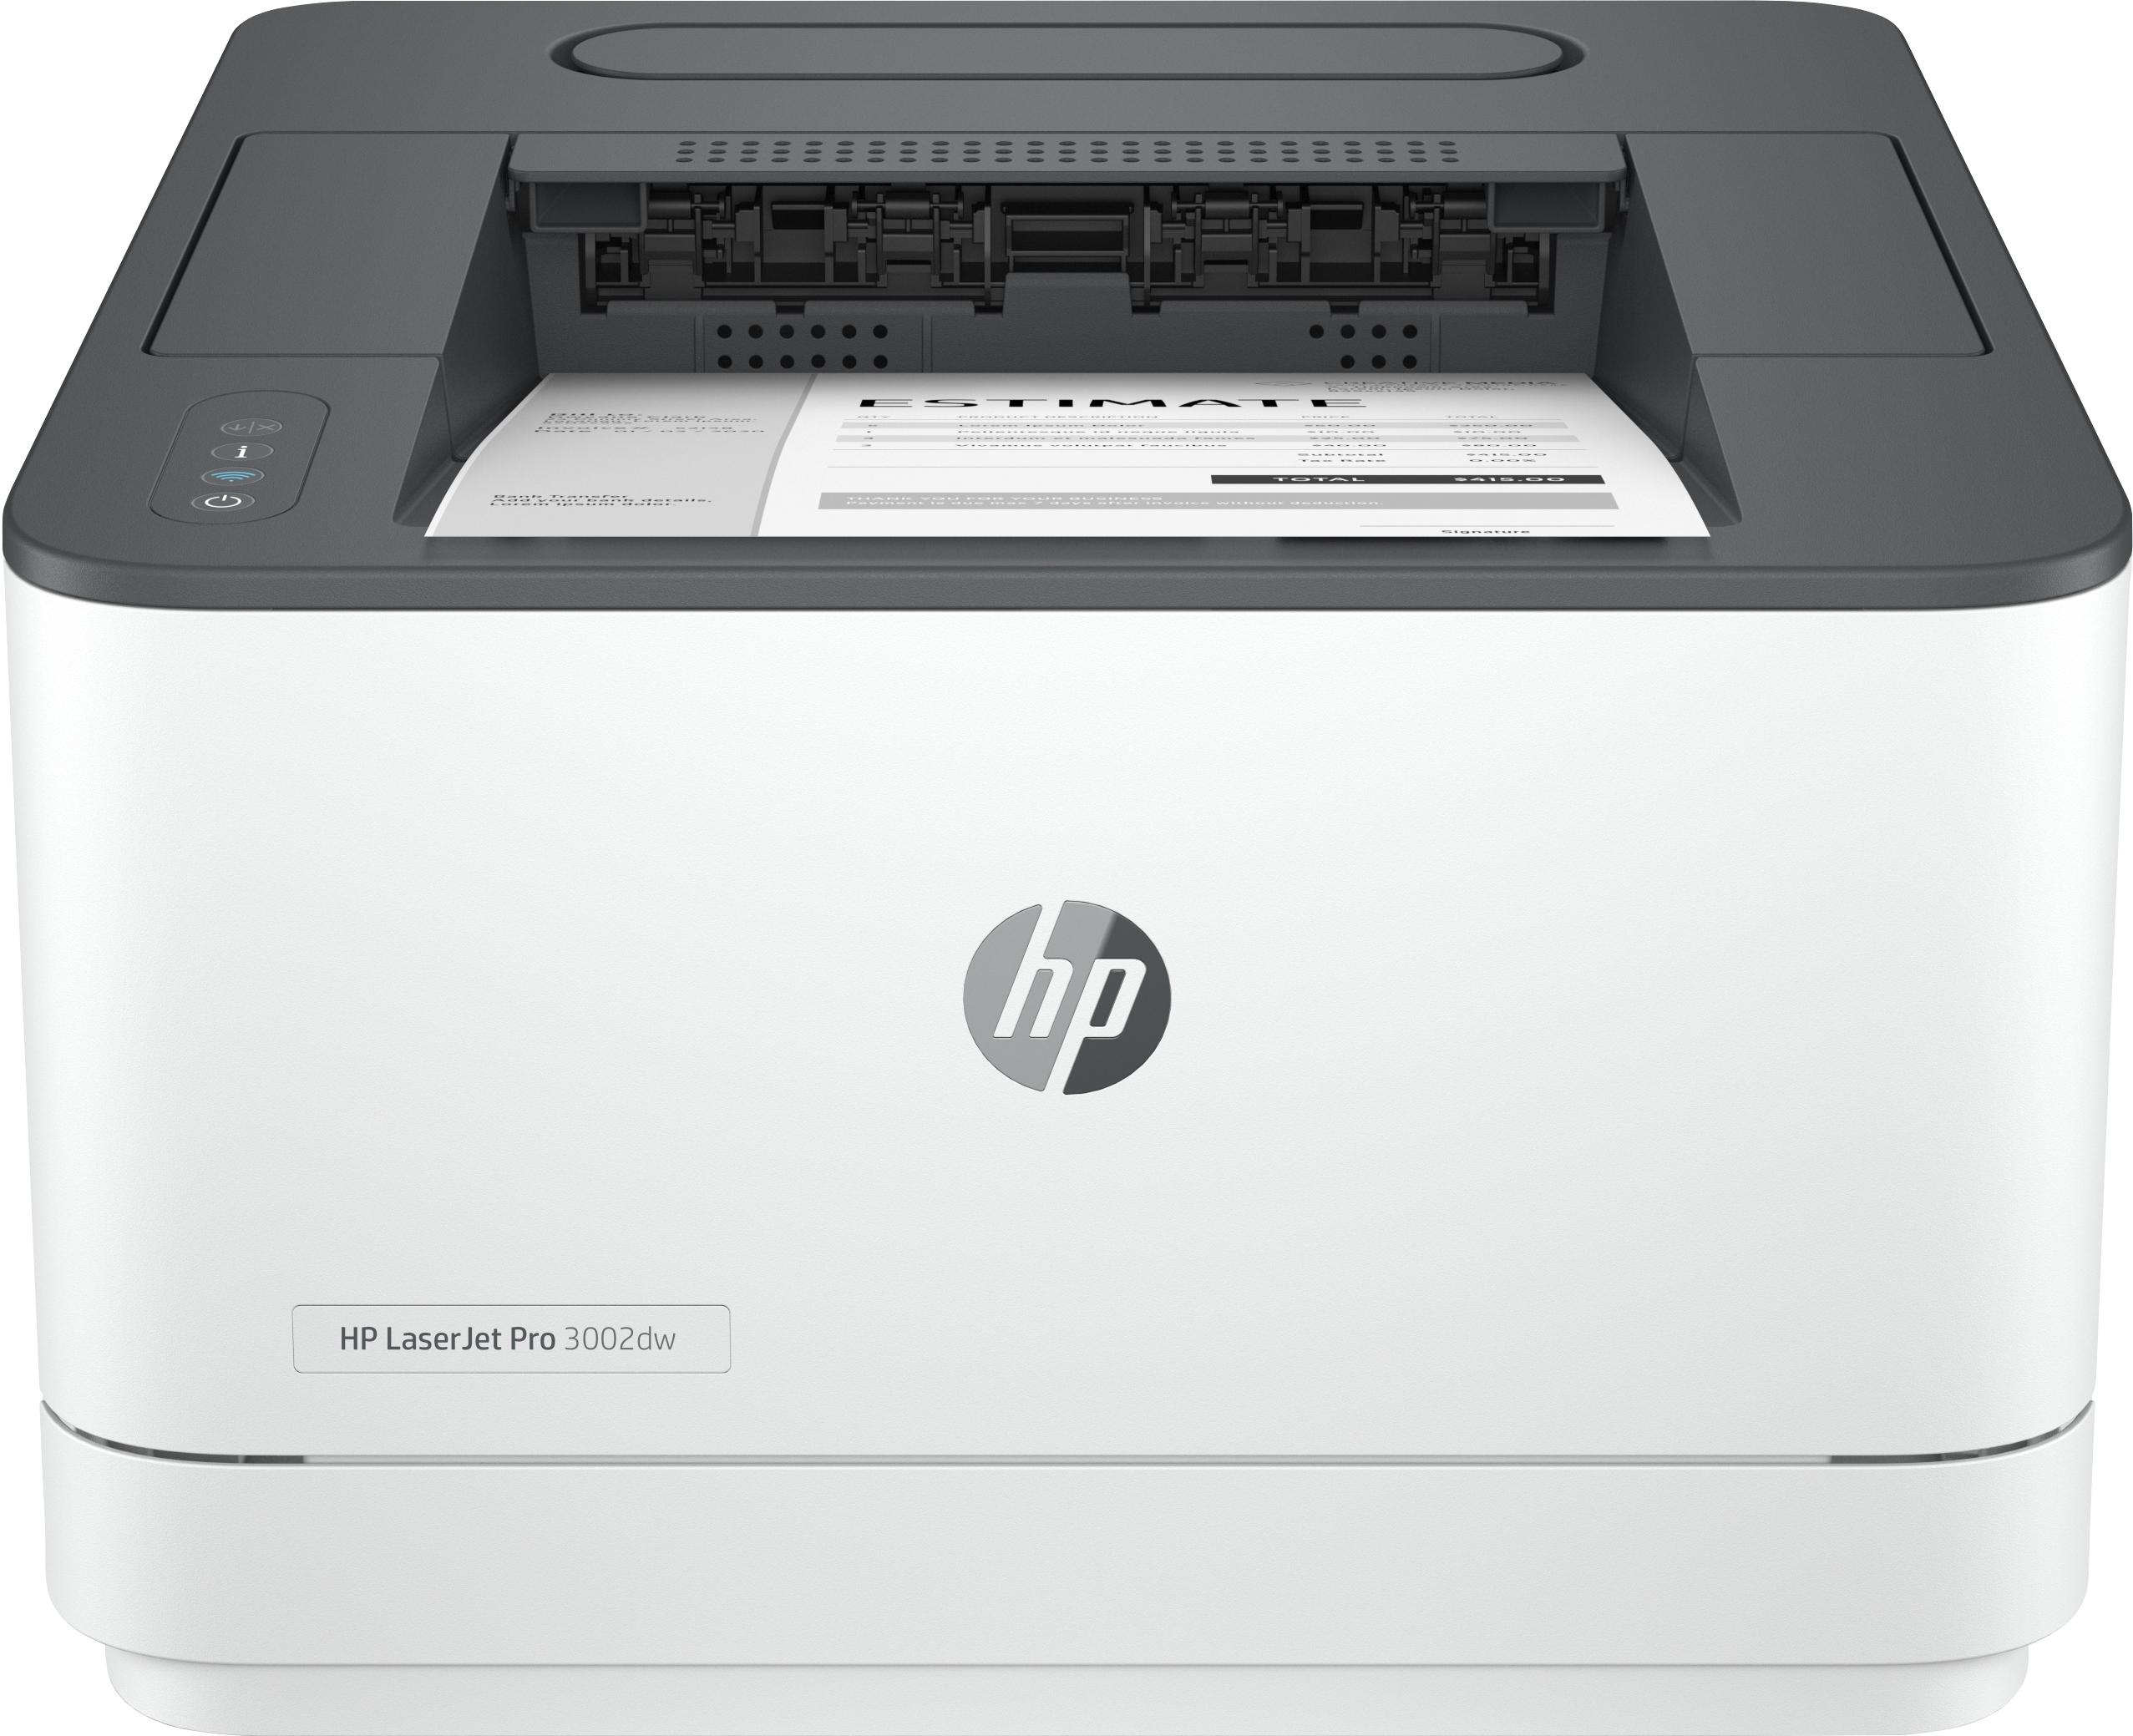 scheiden Verandert in negeren HP HP LaserJet Pro 3002dw printer, Zwart-wit, Printer voor Kleine en  middelgrote ondernemingen, Print, Dual-band Wi-Fi; Optimale beveiliging;  Energiezuinig; Eerste pagina snel gereed; Dubbelzijdig printen; Roam  (3G652F#B19) kopen » Centralpoint